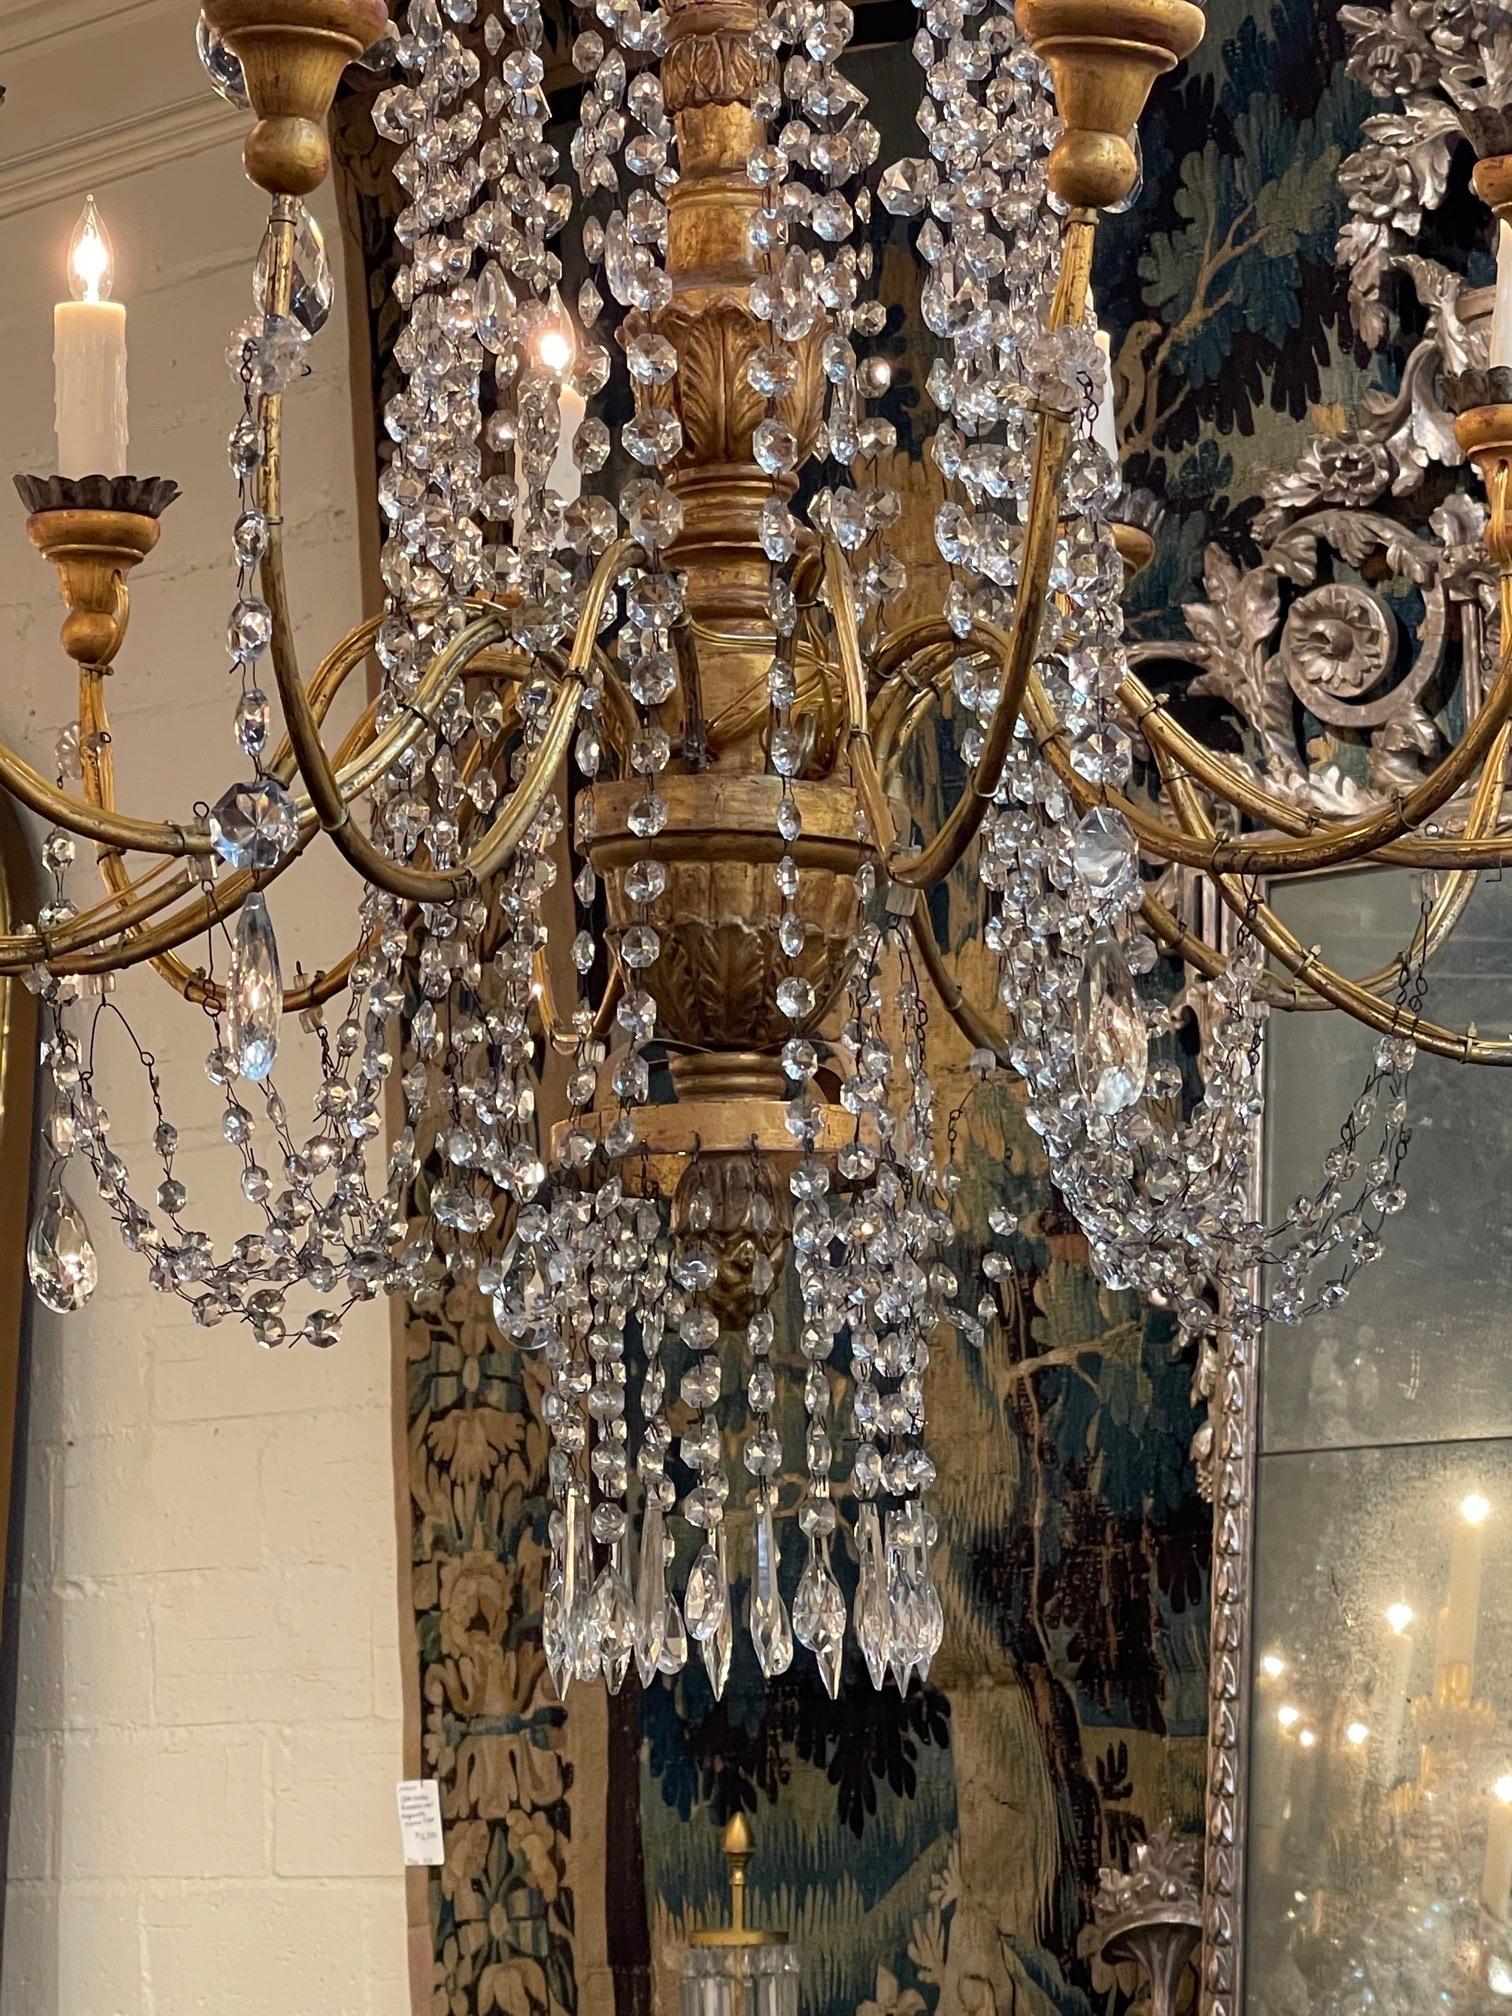 Exquis grand lustre italien du 18ème siècle en bois doré perlé et cristal avec 12 lumières. La base est magnifiquement sculptée et recouverte de superbes perles et cristaux. L'échelle et la forme de cet étonnant luminaire sont remarquables.